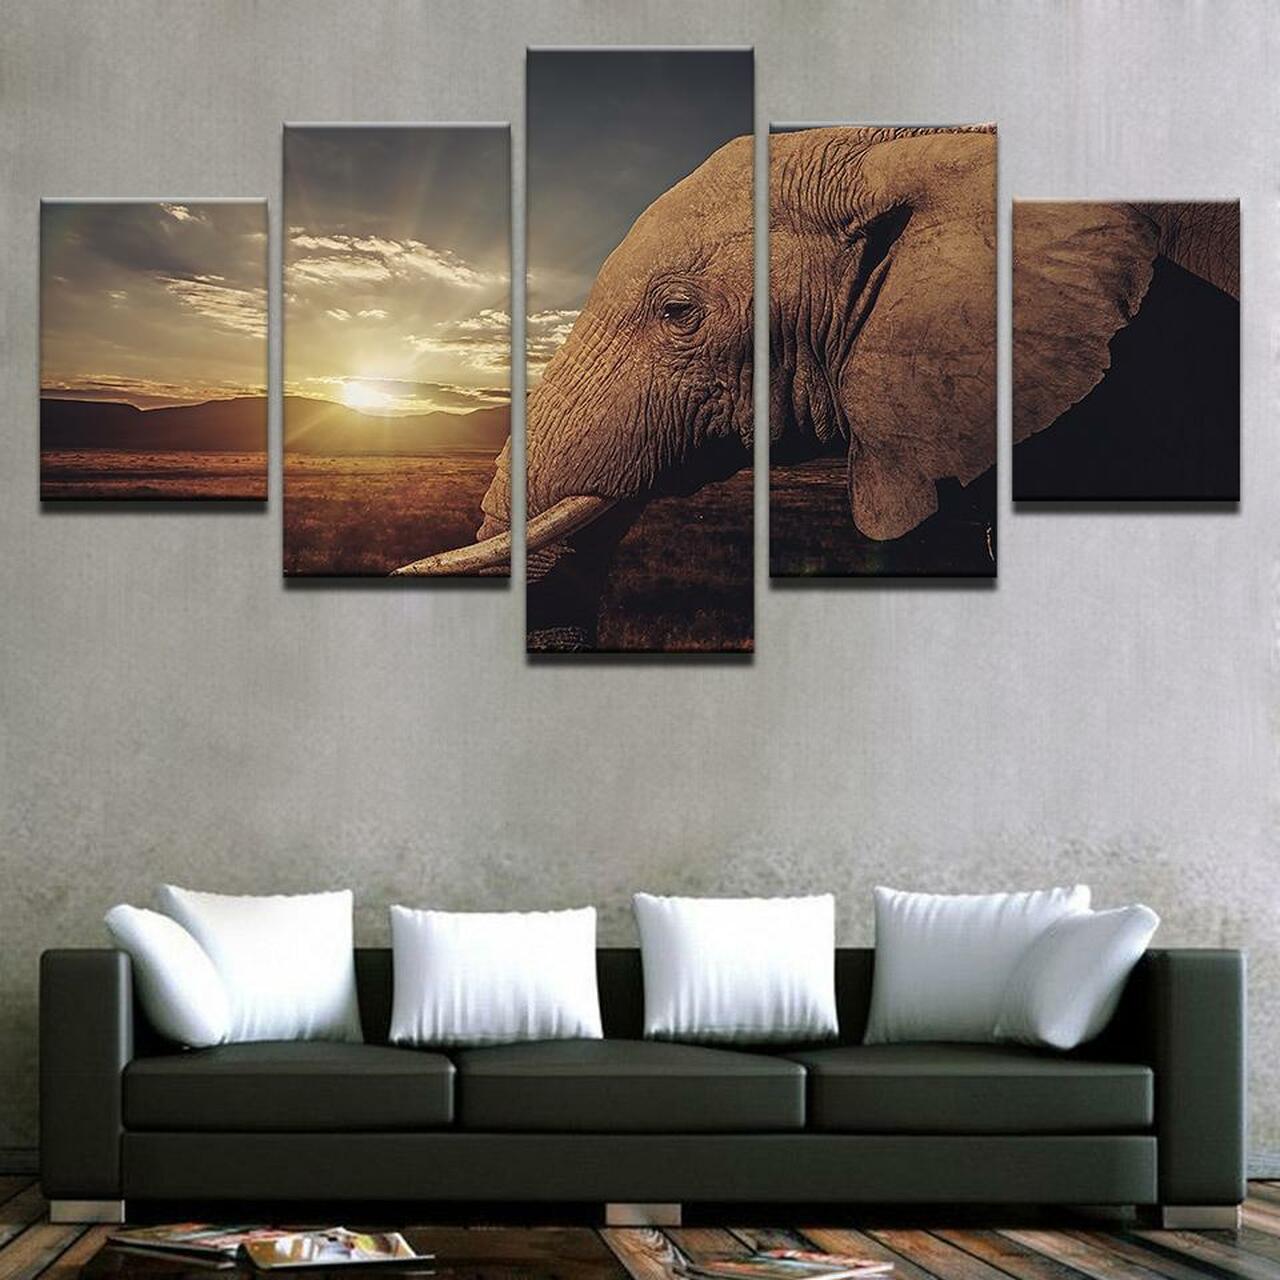 Sunrise Elephant 5 Piece Canvas Art Wall Decor